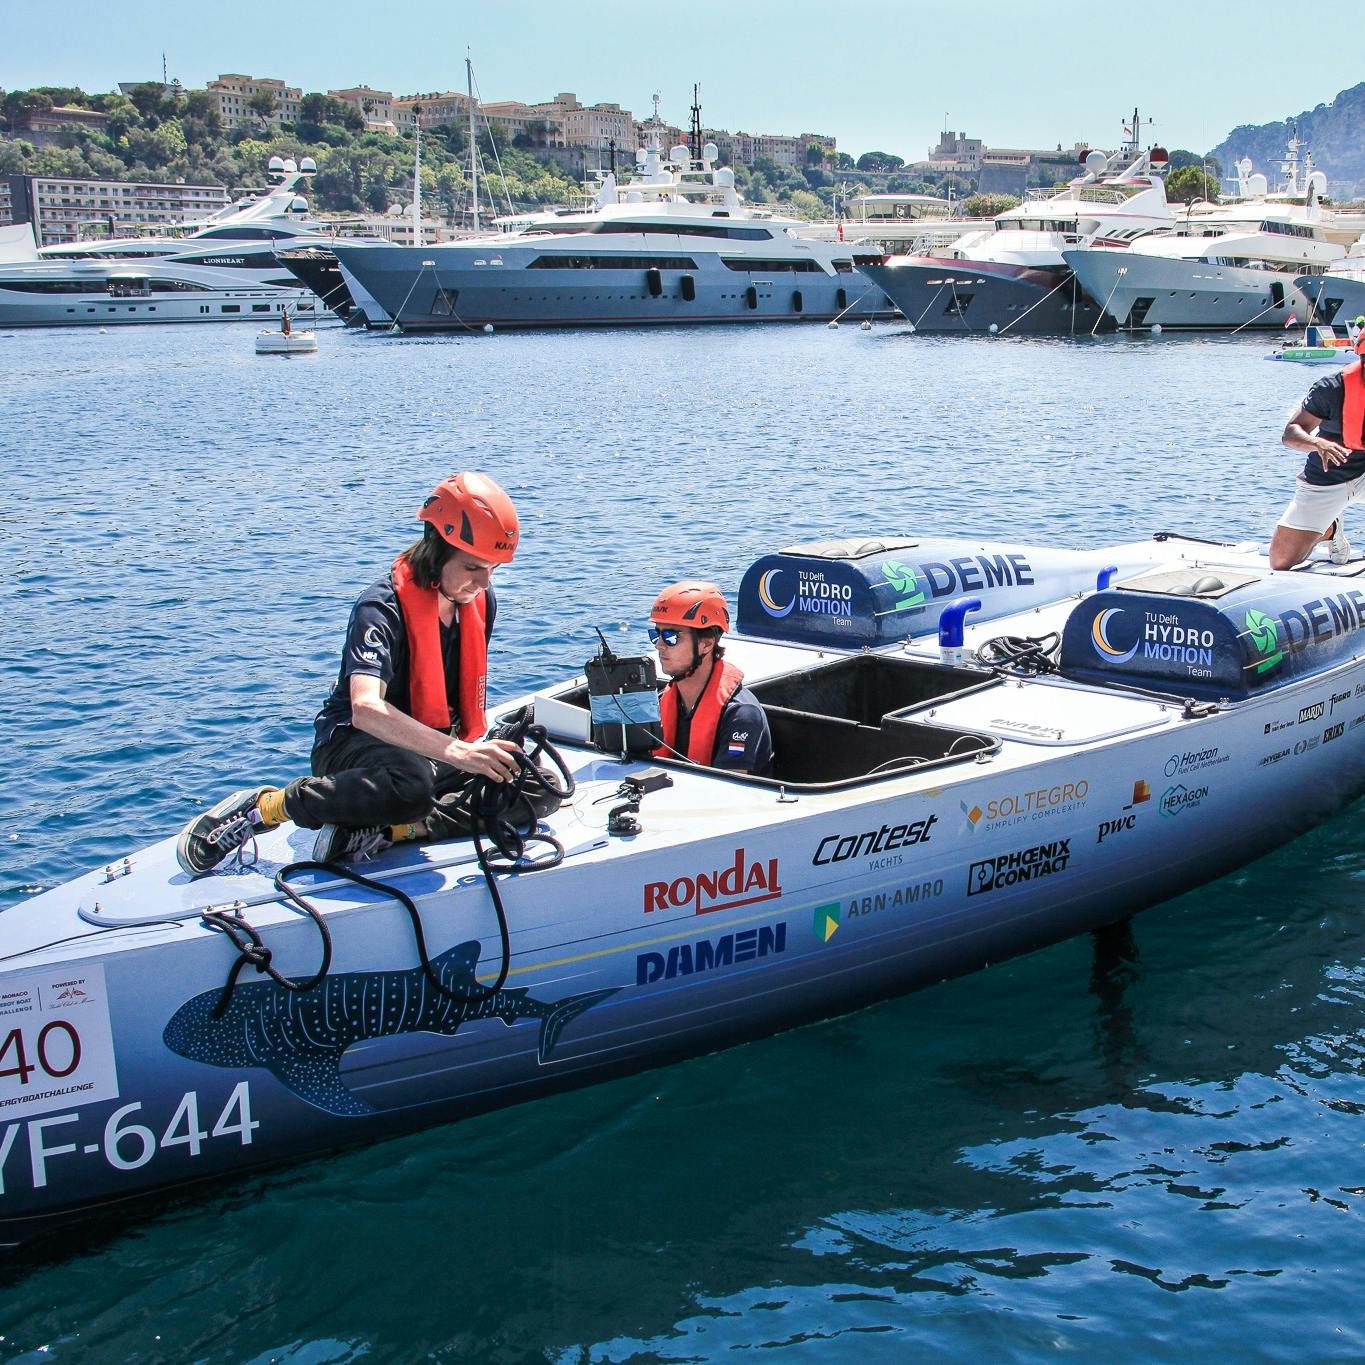 Racen met een boot op waterstof: 'We doen mee om te laten zien wat waterstof kan'